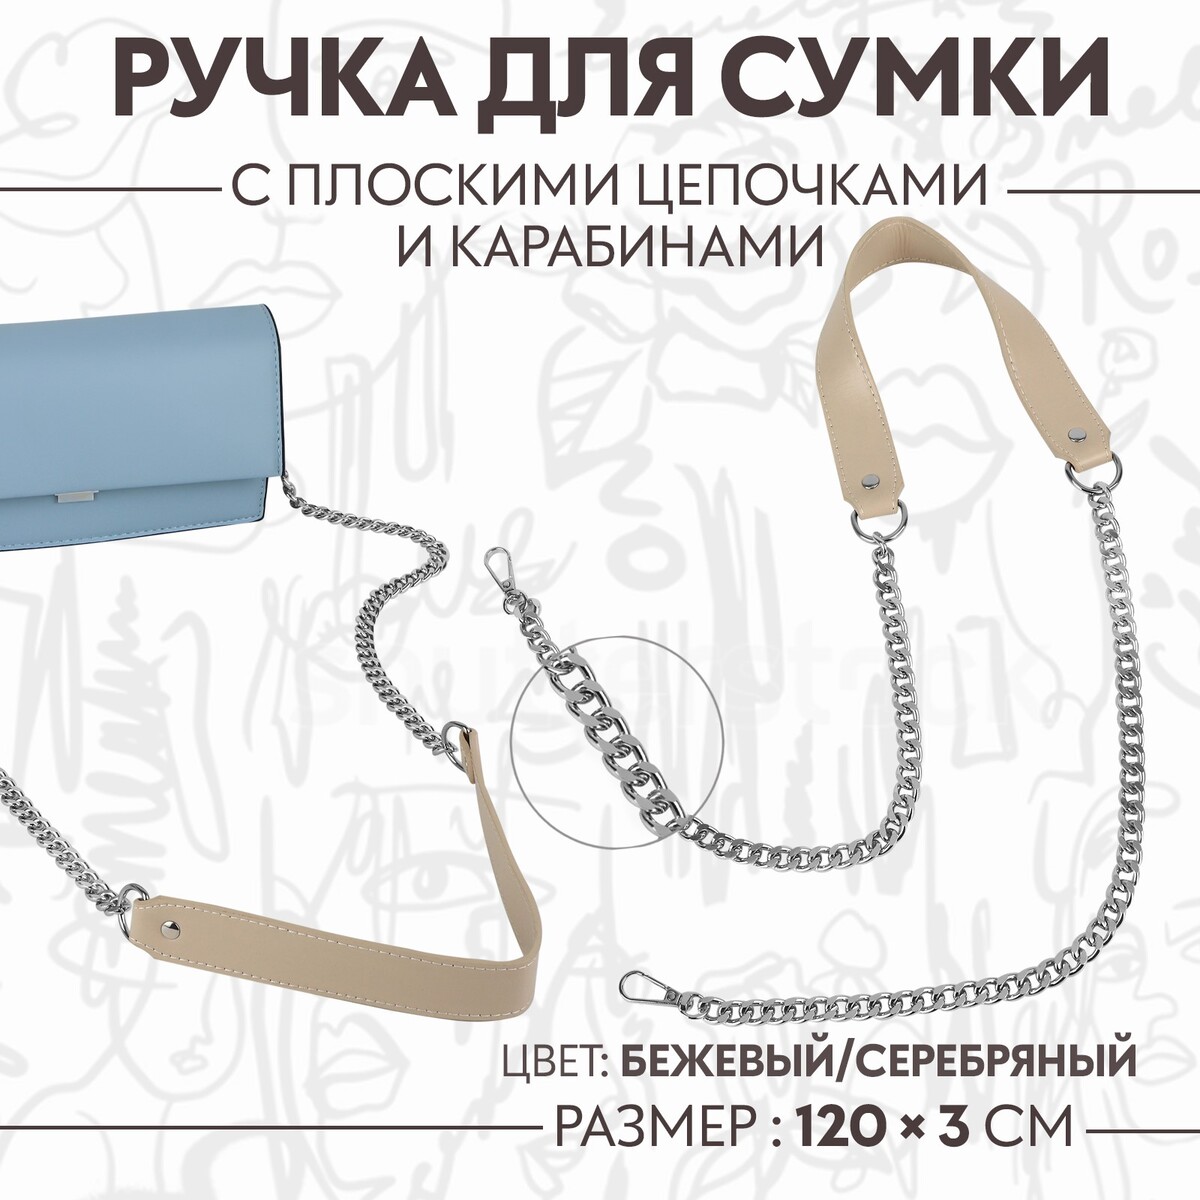 Ручка для сумки, с плоскими цепочками и карабинами, 120 × 3 см, цвет бежевый/серебряный ручка для сумки канат 60 × 1 5 см с карабинами кремовый серебряный